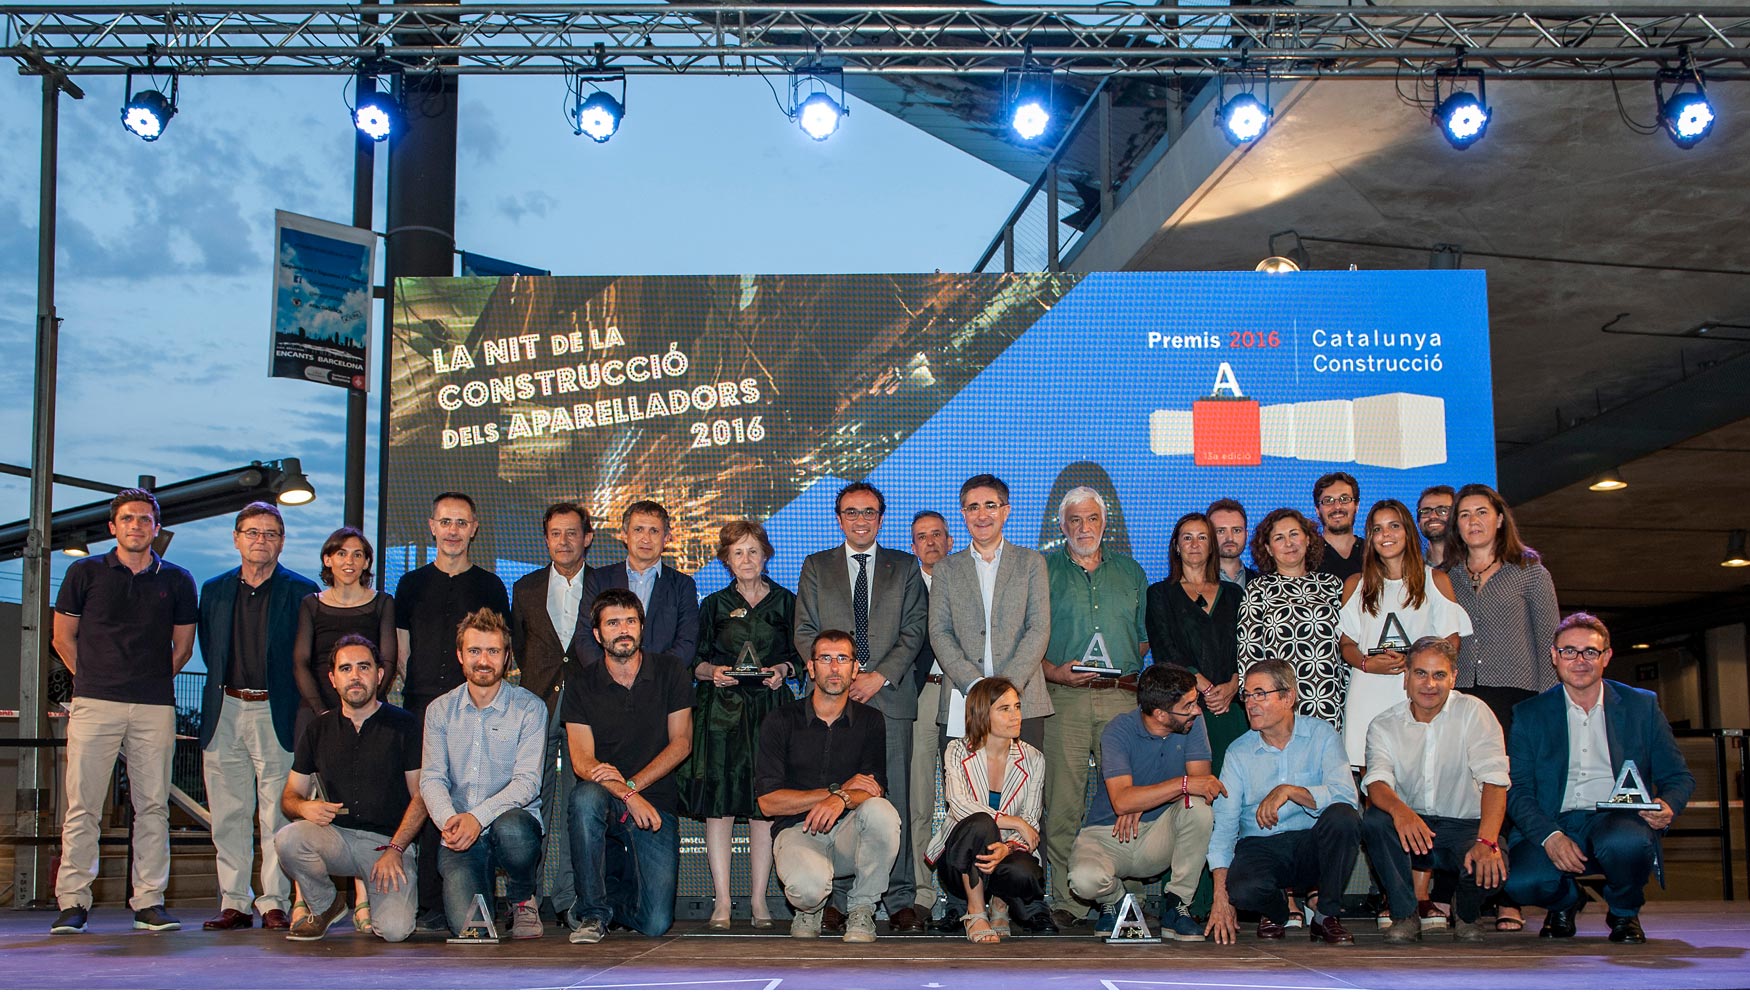 Los Premios Catalua Construccin 2016 se entregaron en la Nit de la Construcci el pasado jueves 30 de junio